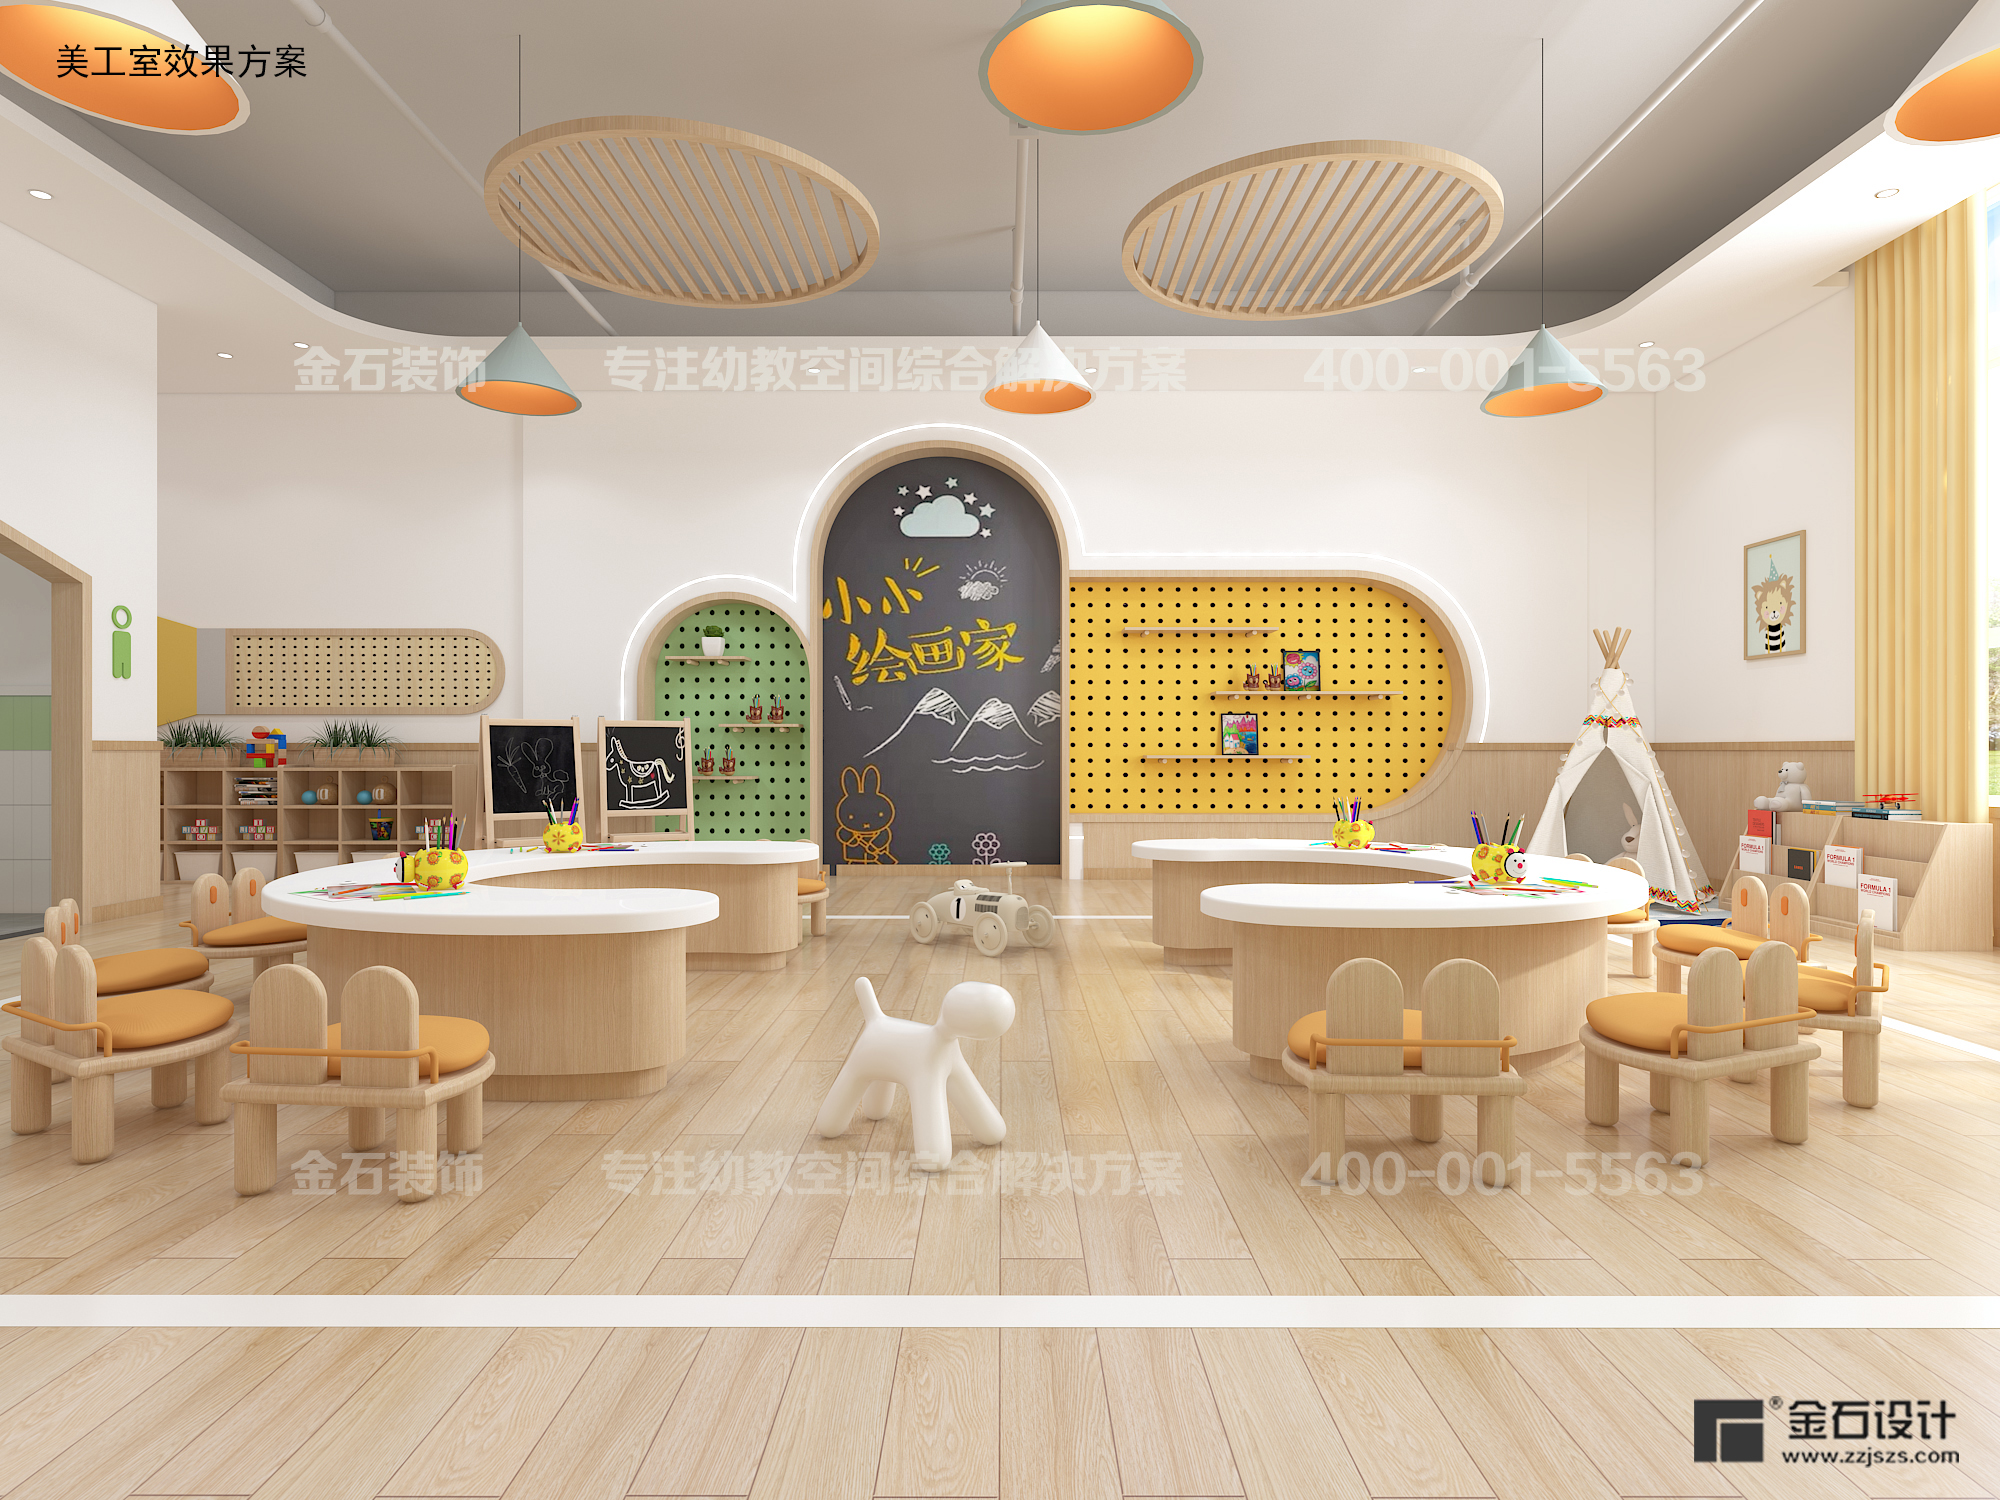 创意梦工坊——幼儿园美工室设计